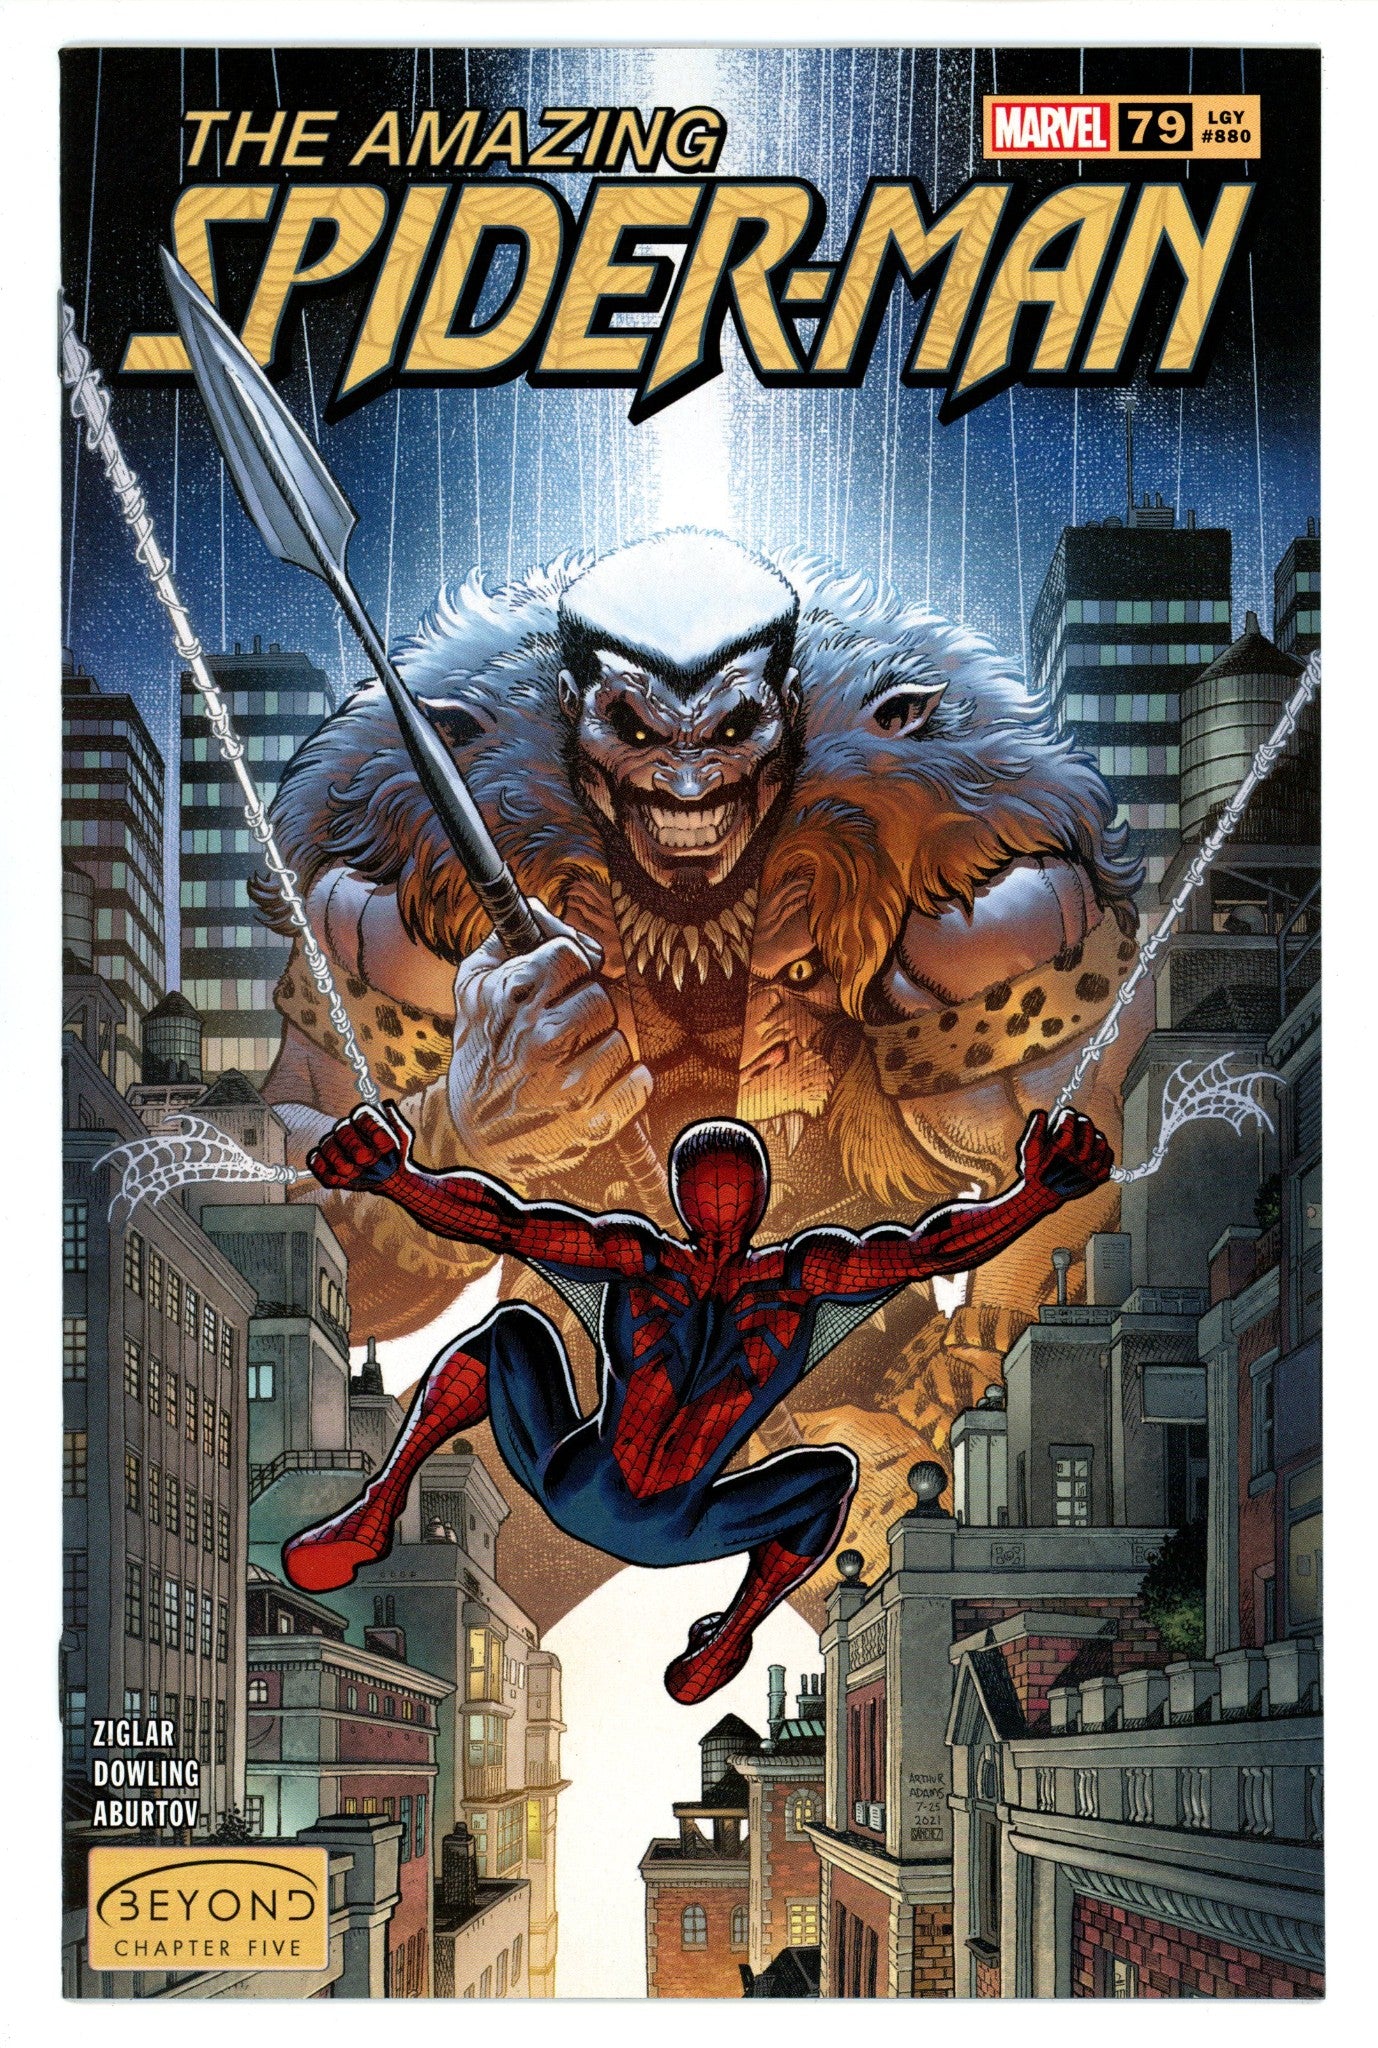 Amazing Spider-Man Vol 5 79 (880) High Grade (2022) Adams Exclusive Variant 